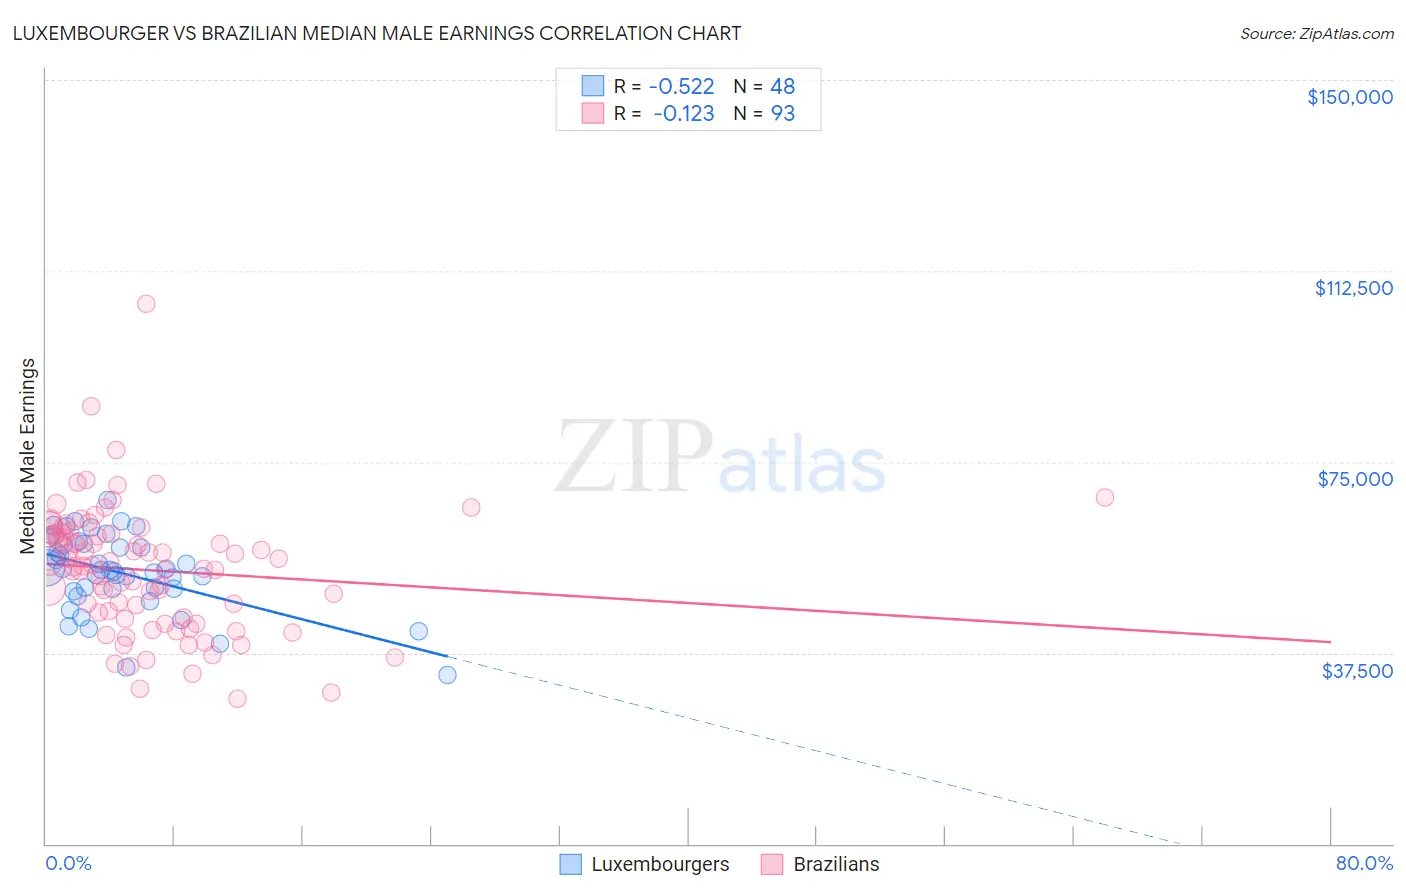 Luxembourger vs Brazilian Median Male Earnings